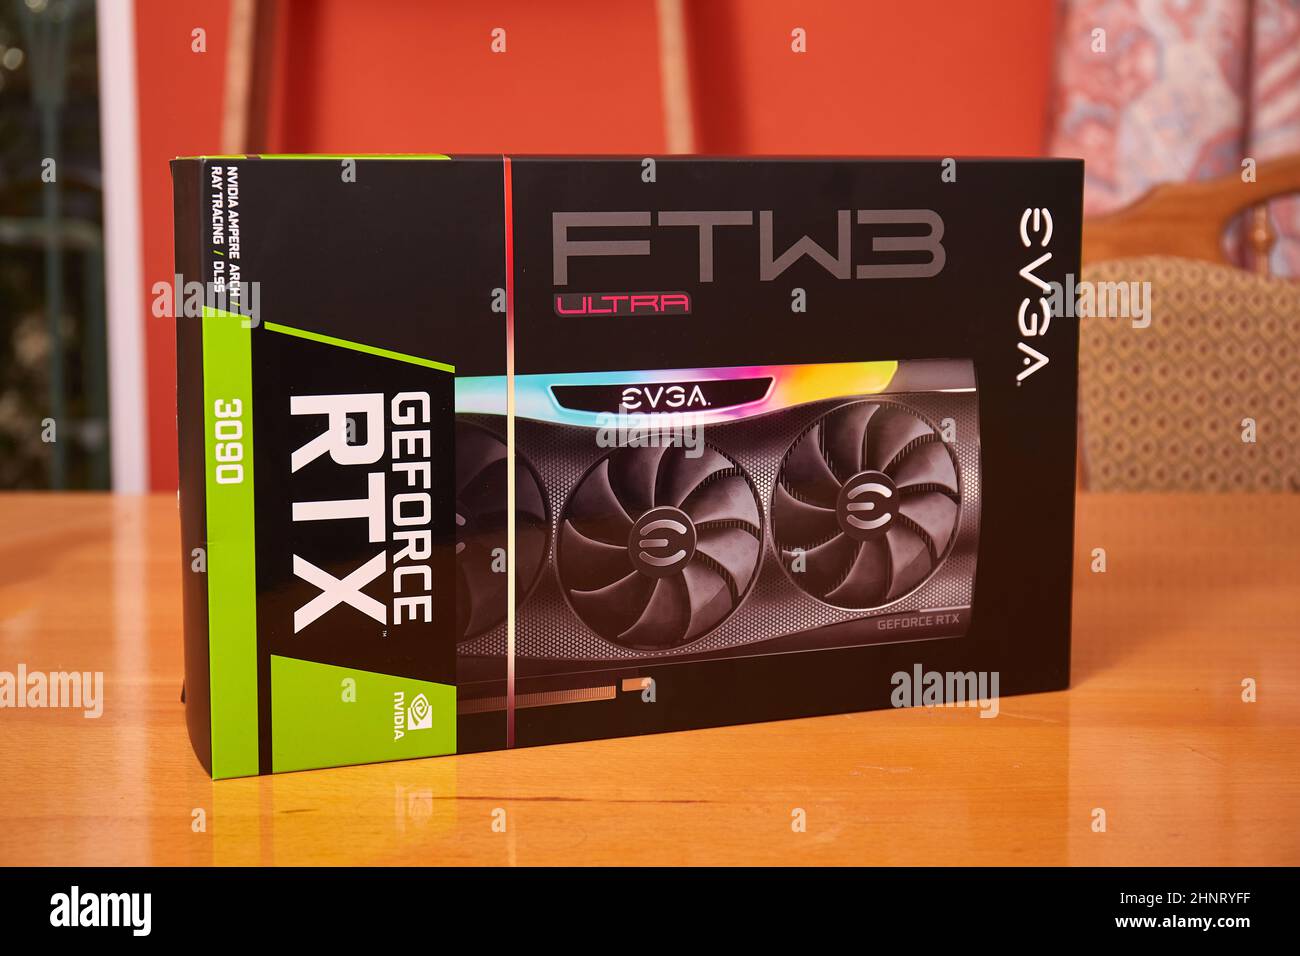 EVGA Geforce RTX 3090 Nvidia GPU box Stock Photo